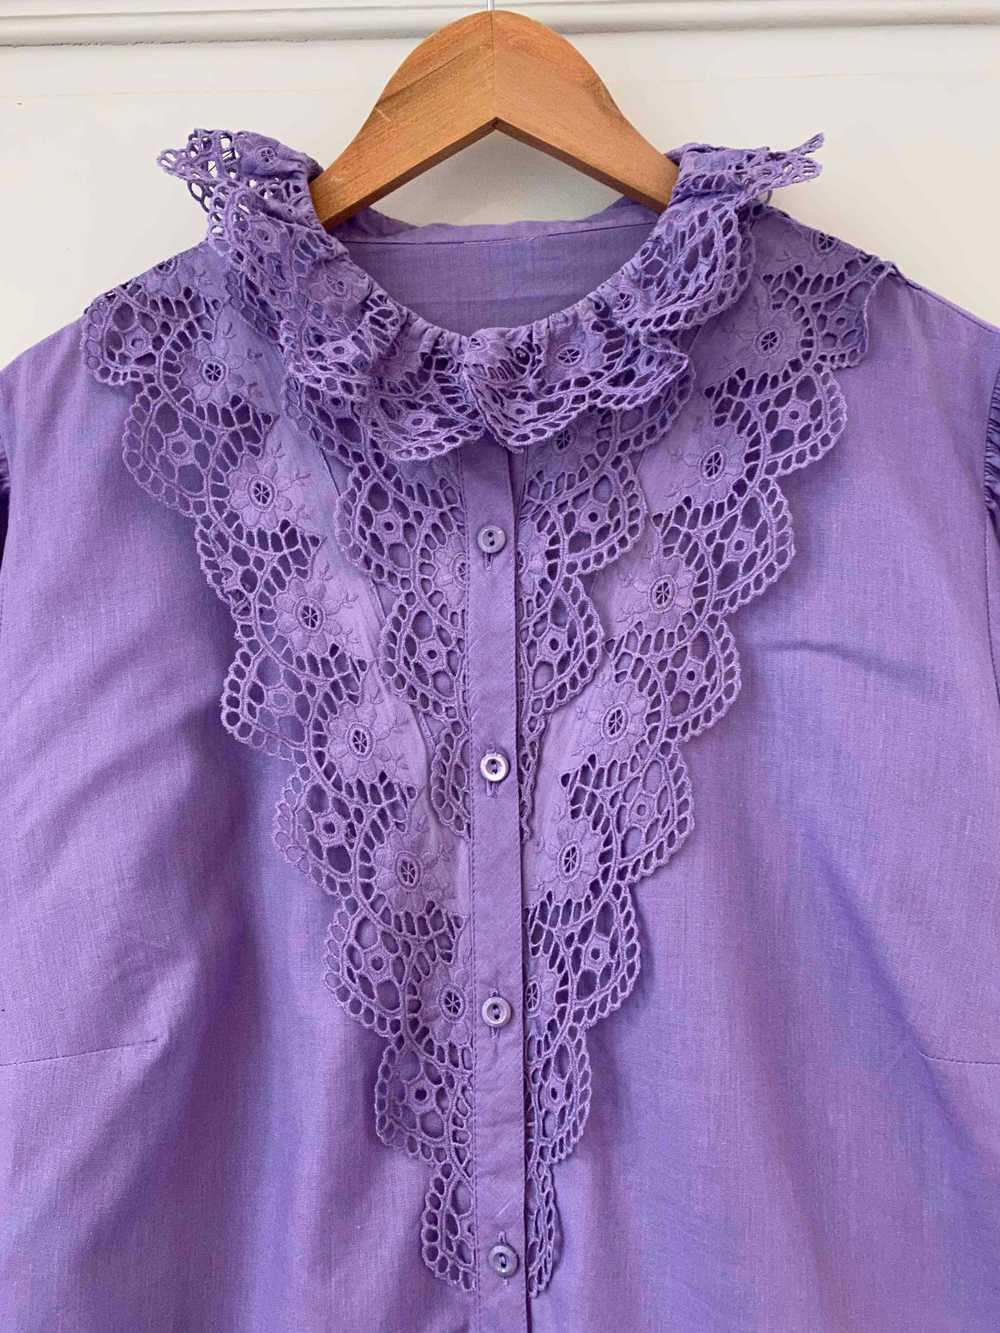 Austrian blouse - Austrian cotton blouse in paste… - image 2